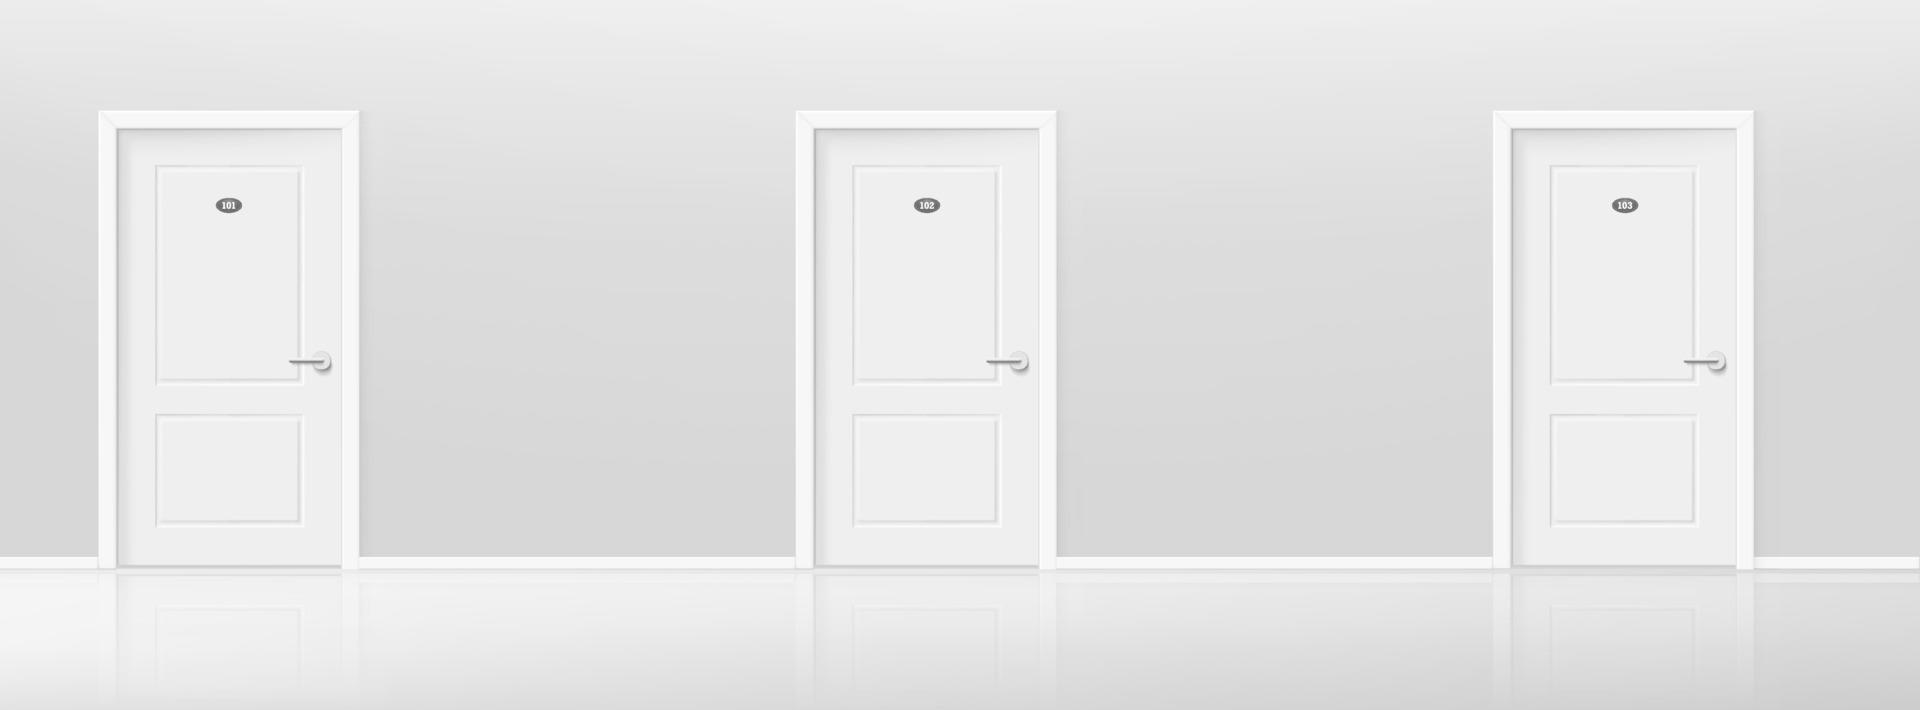 puerta cerrada en un pasillo del hotel. ilustración vectorial de estilo 3d realista vector